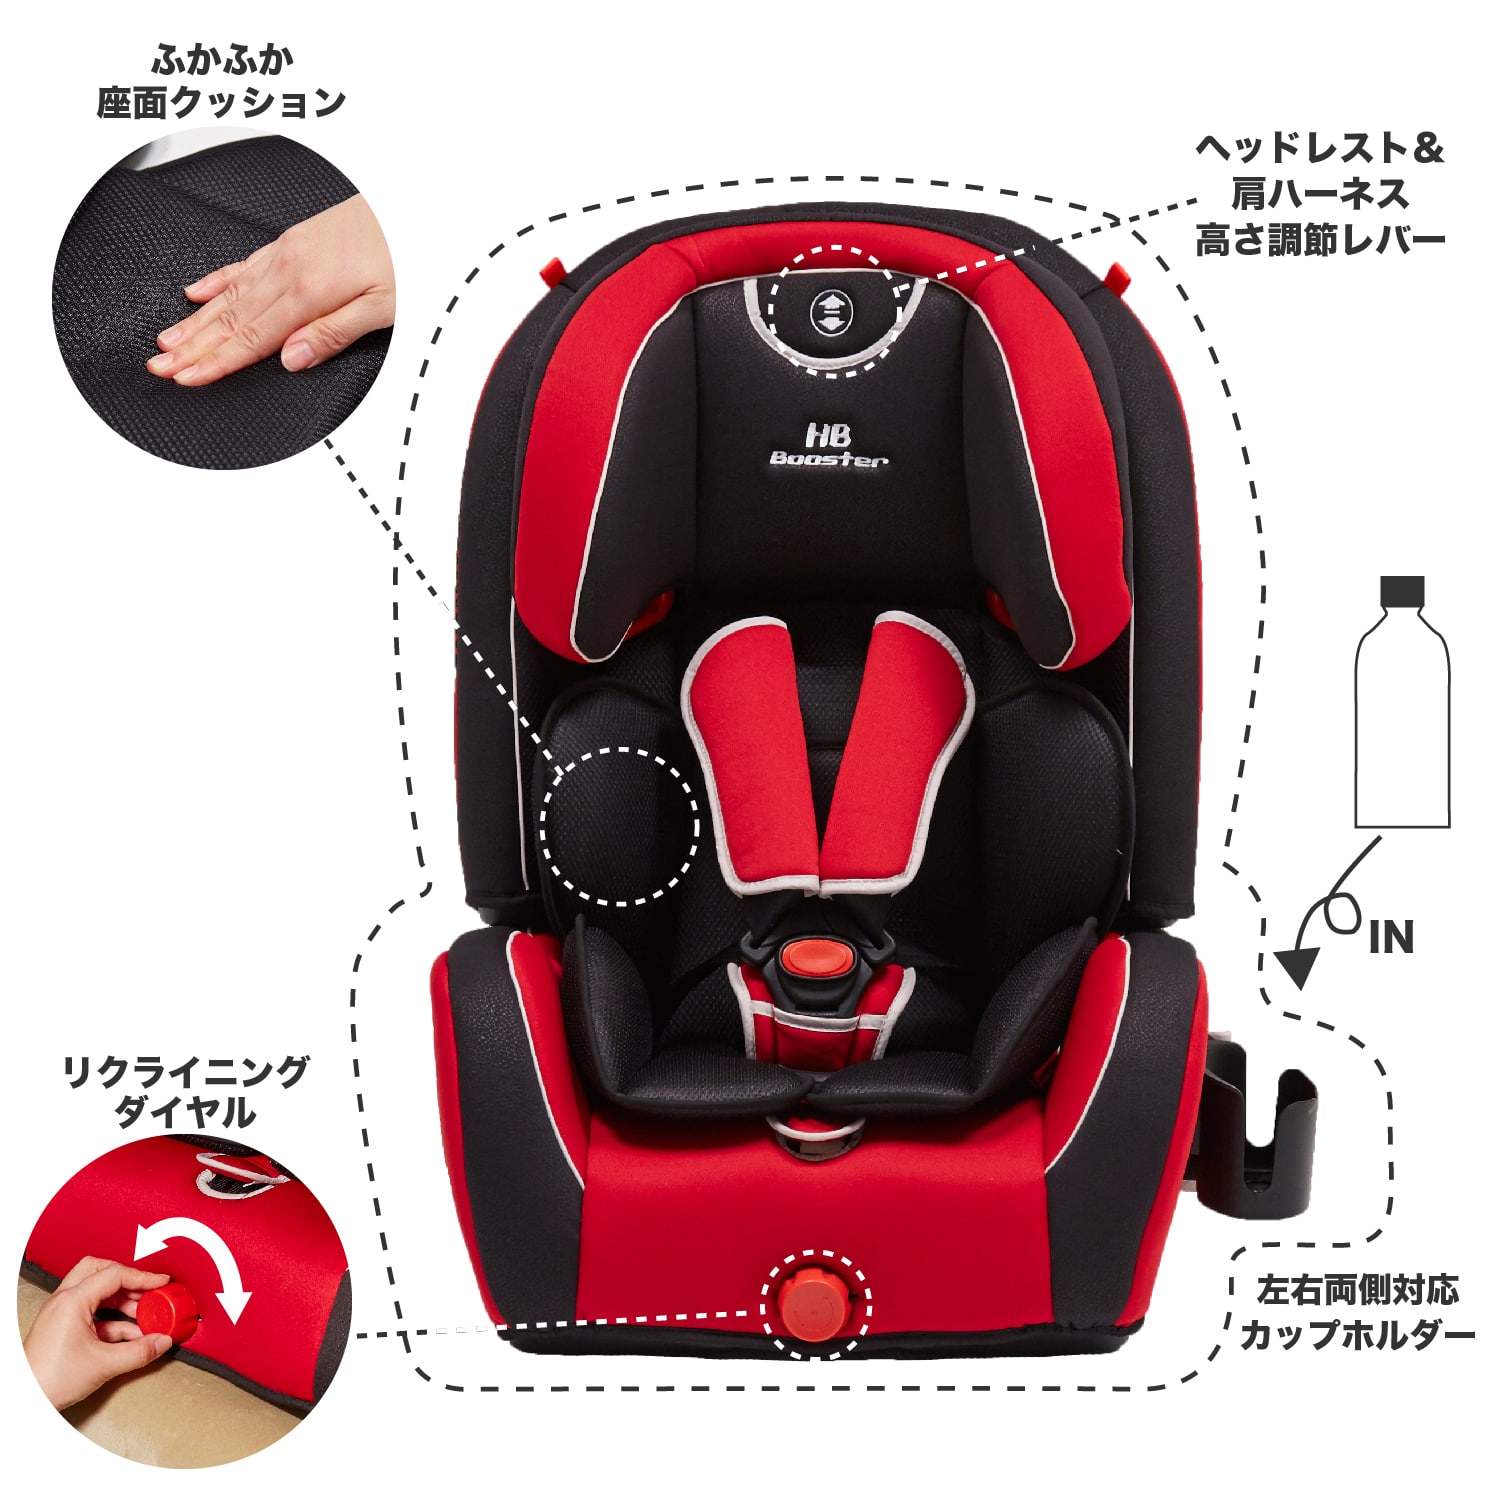 快適性と便利な機能がいっぱい！ ハイバックブースター EC3 日本育児